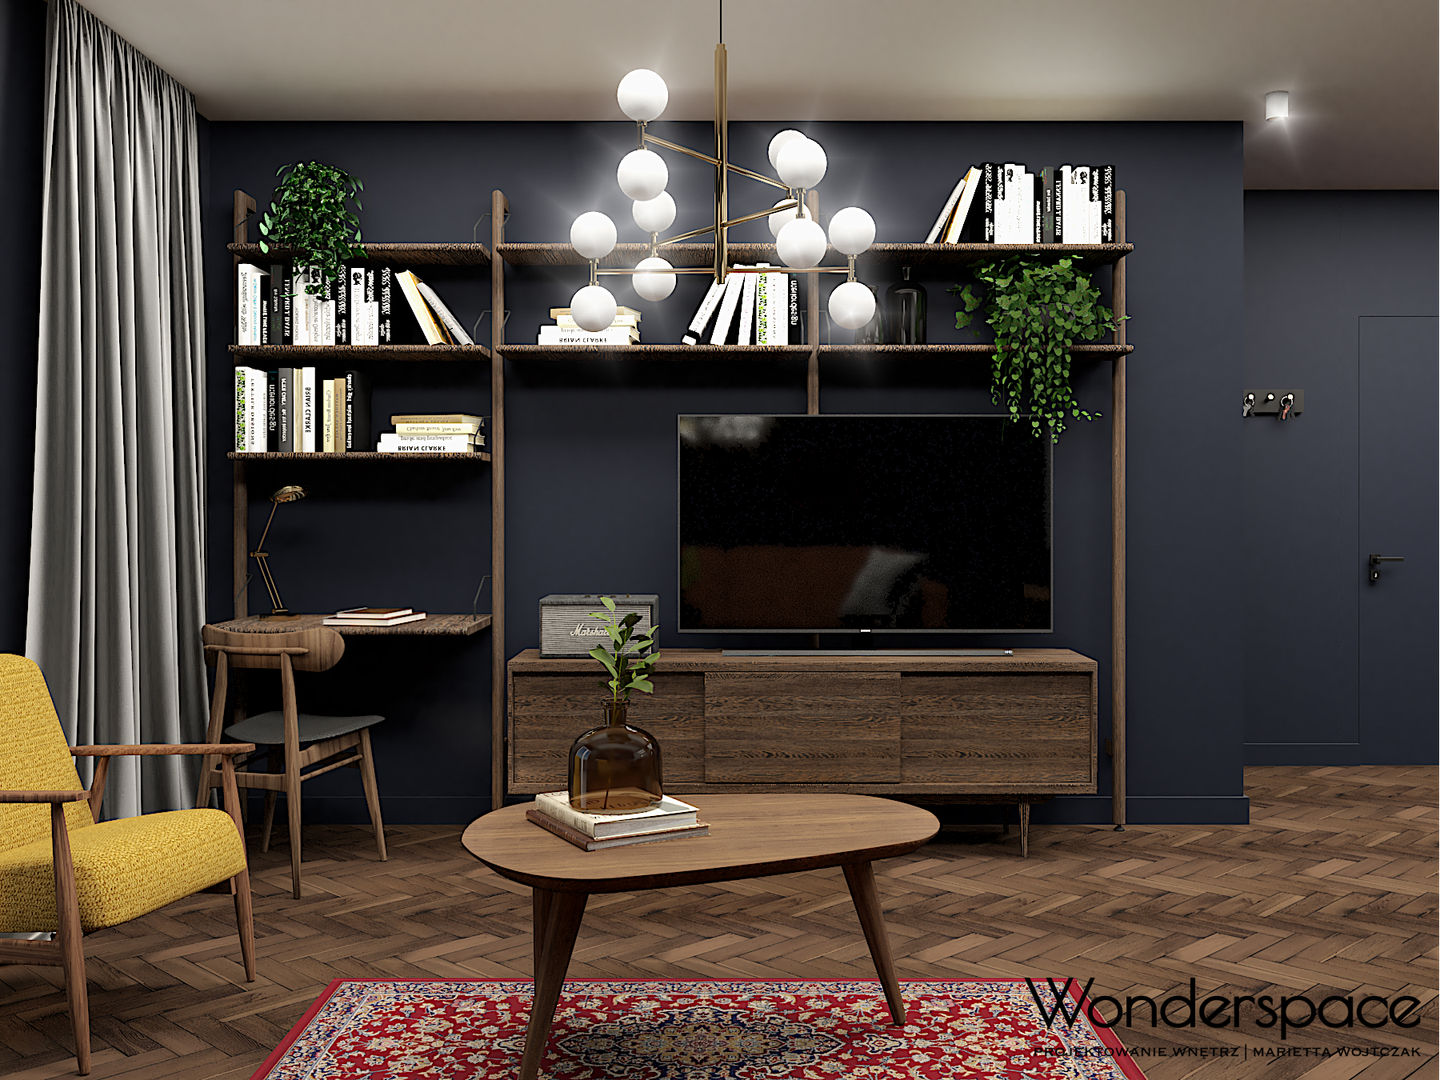 Eklektyczne mieszkanie w Warszawie, Wonderspace Wonderspace Salas de estilo ecléctico